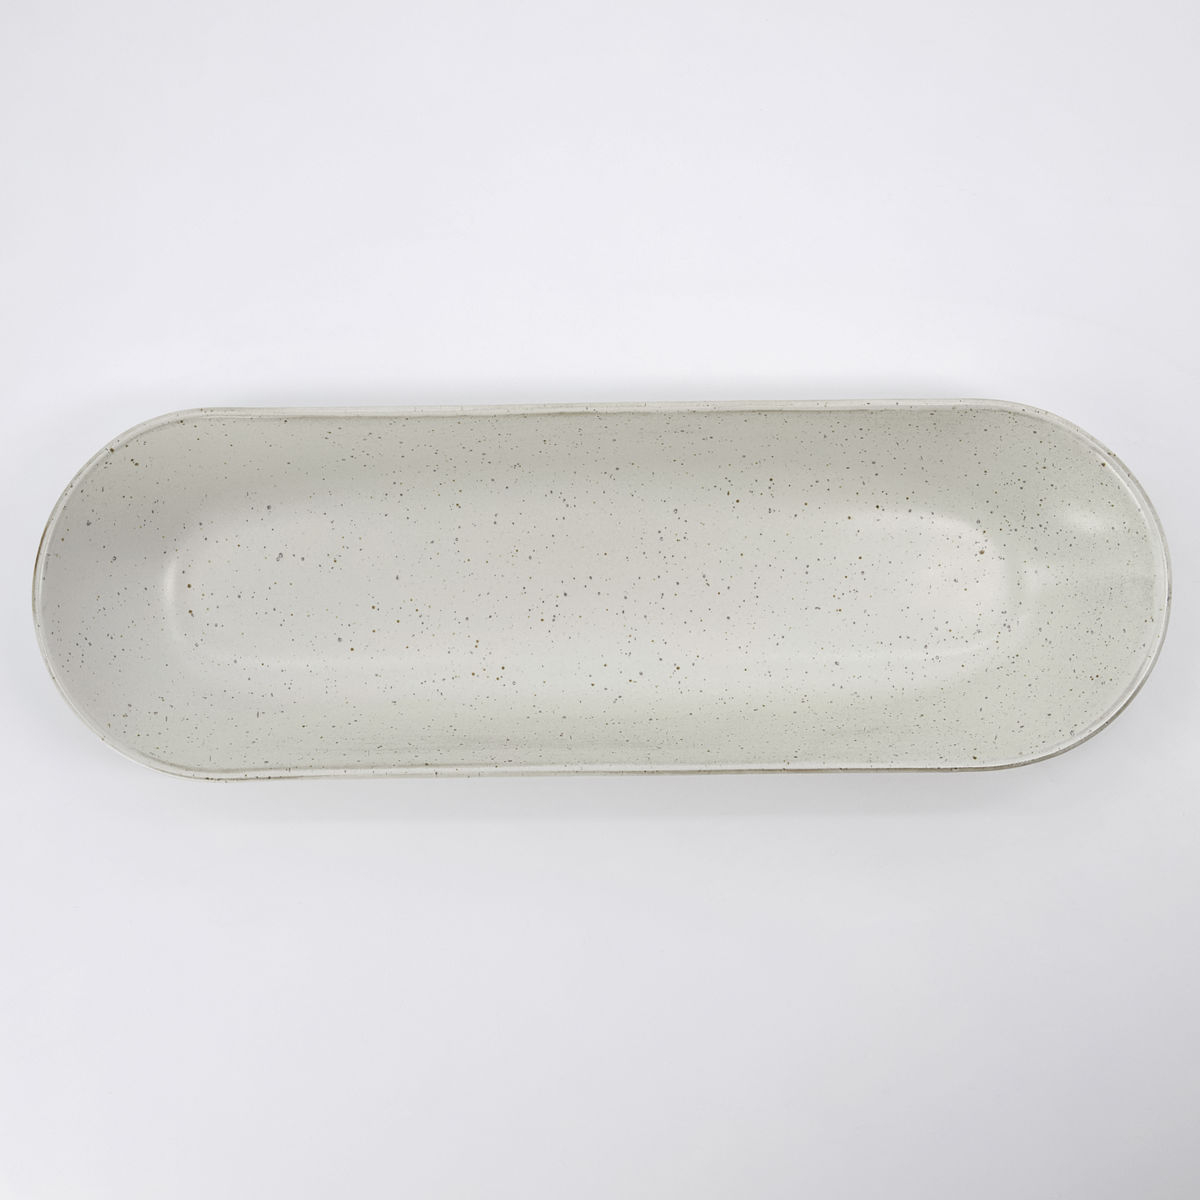 Serveringsfad, Pion, L 35 cm, grå/hvid